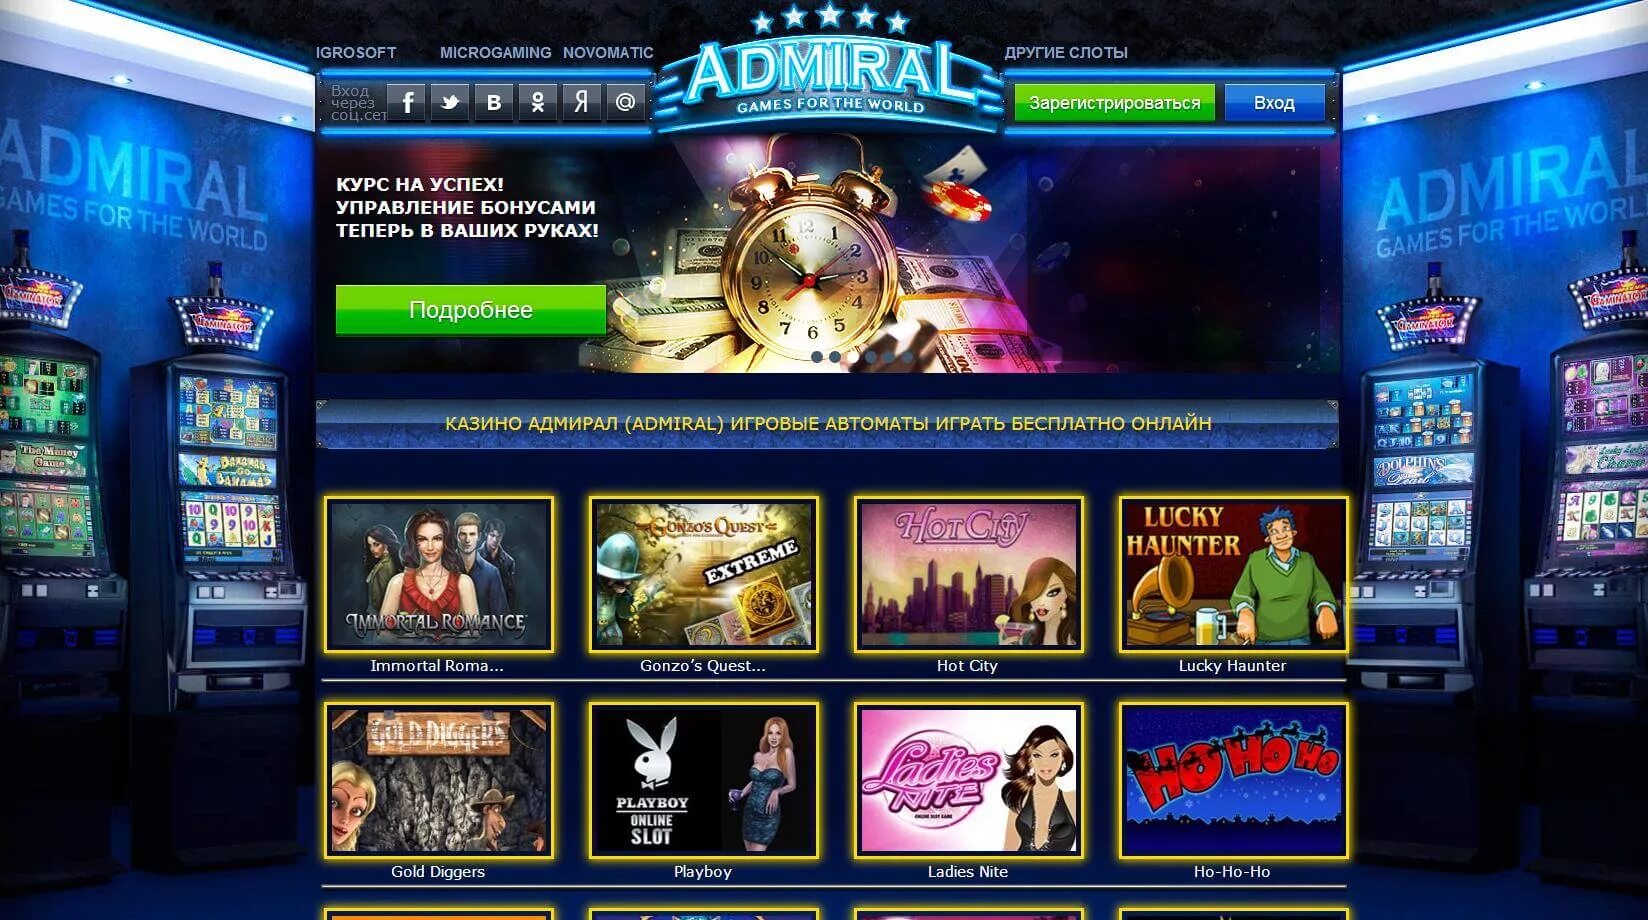 Адмирал x admiralx game top. Интернет казино игровые аппараты Admiral. Адмирал казино игровые автоматы. Игровые автоматы Адмирал 777 на деньги. Адмирал слот игровой автомат.